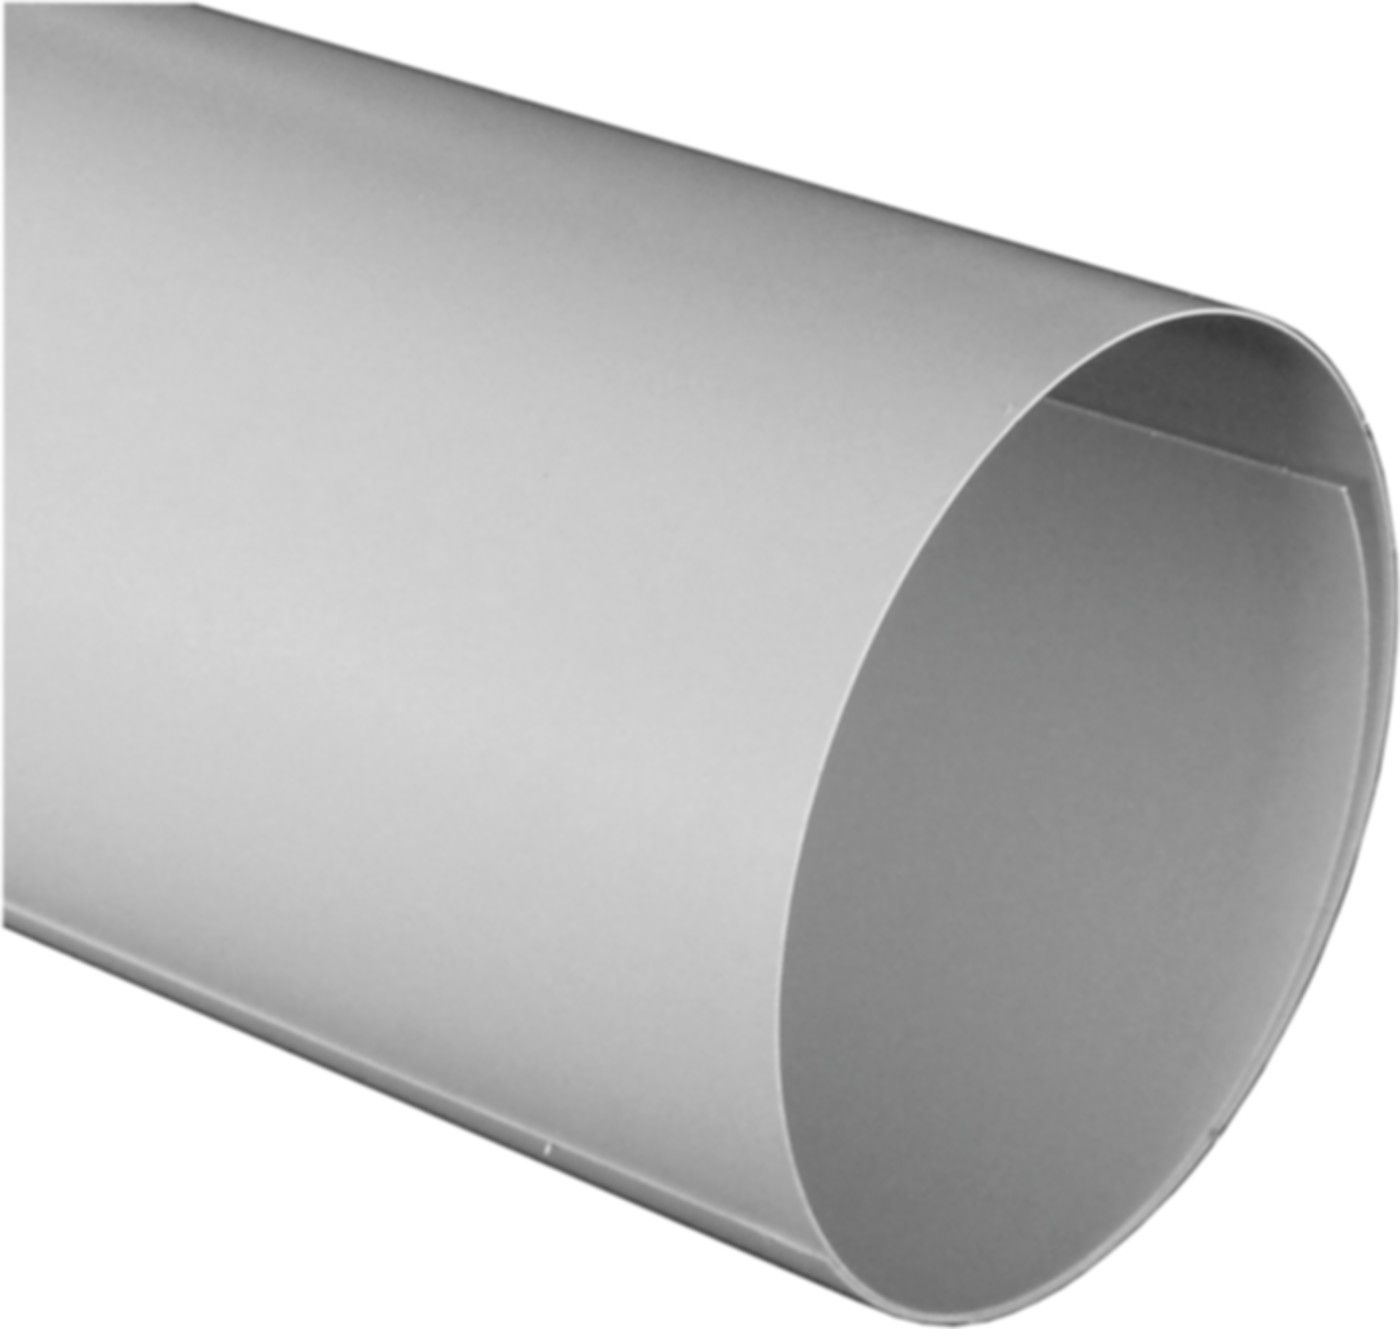 PVC Zuschnitte Breite 650 mm für d 30/133;40/114;50/89;60/70;80/27 mm - PVC-Folie